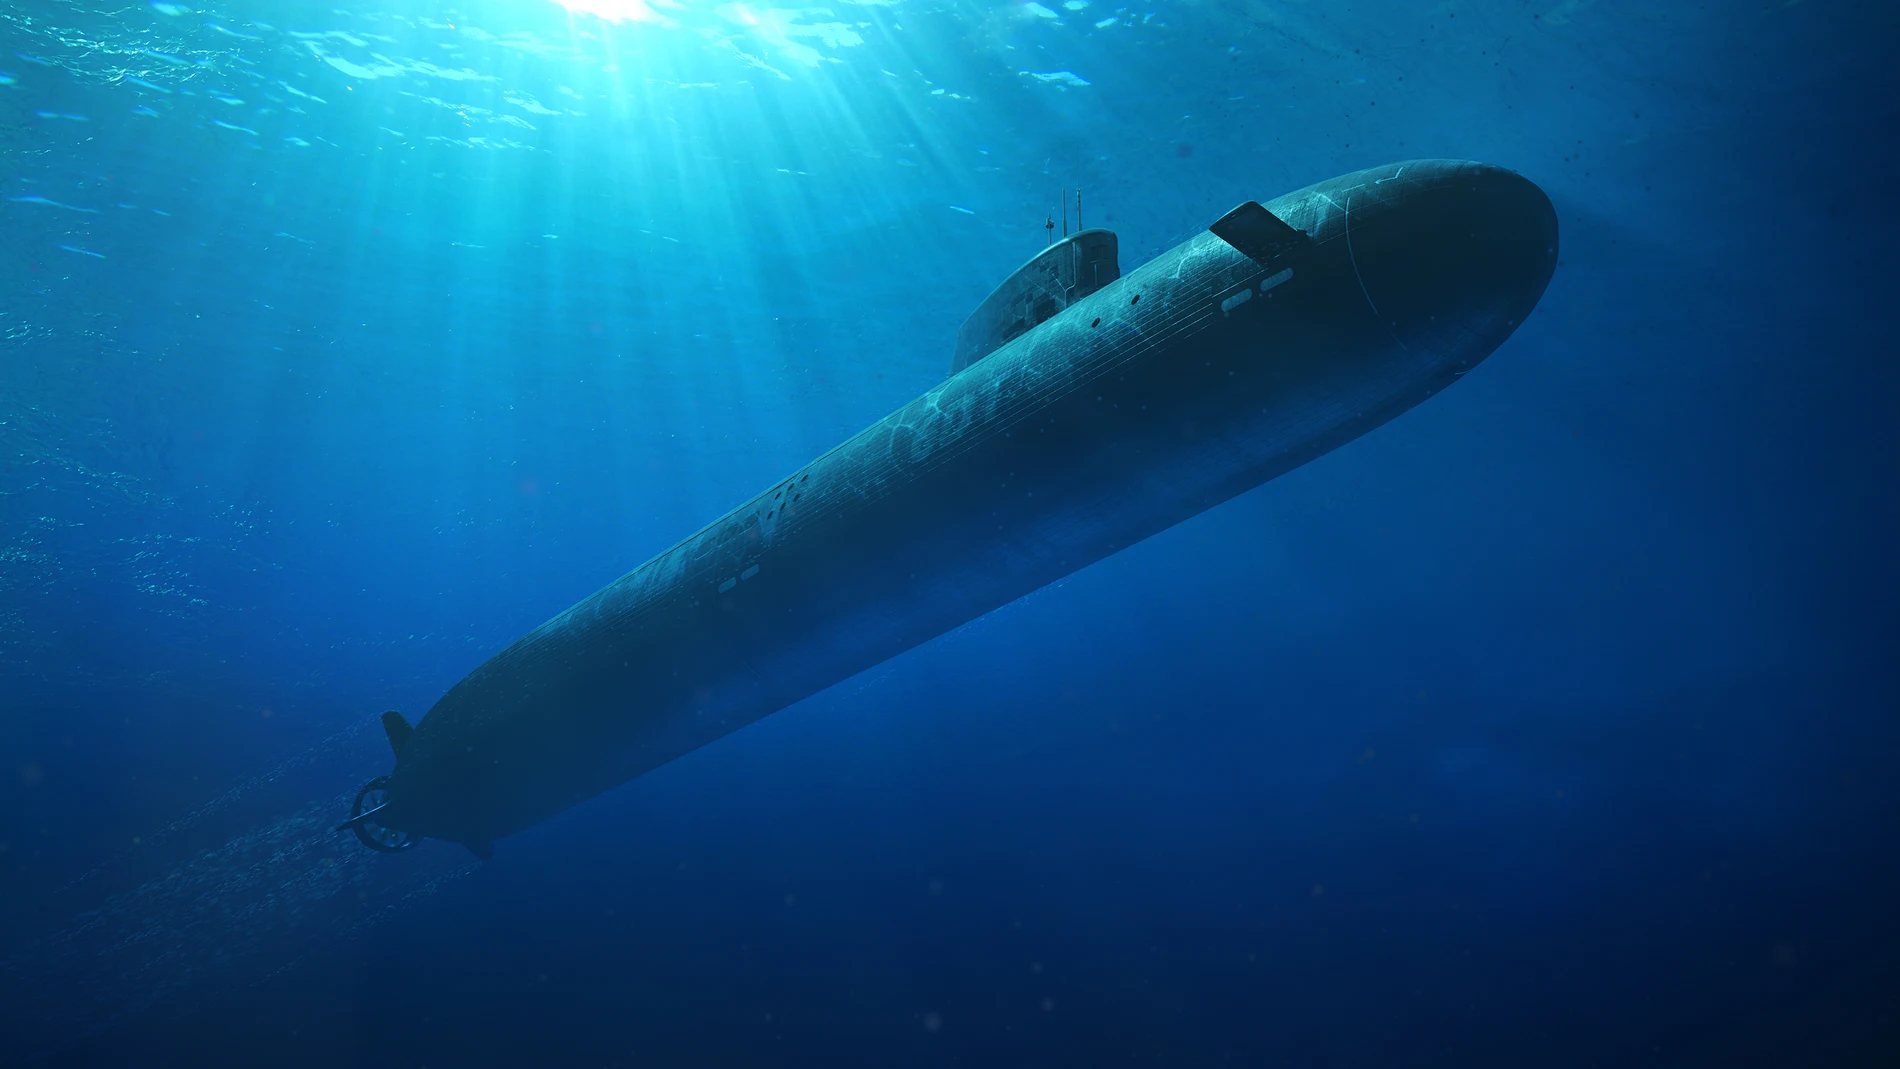 SÍDNEY (AUSTRALIA), 22/03/2024.- Imagen cedida de un submarino SSN-AUKUS sumergido. Australia anunció este viernes que destinará más de 4.600 millones de dólares australianos (unos 3.000 millones de dólares) para construir submarinos de propulsión nuclear tras un acuerdo con Reino Unido, en el marco de la alianza Aukus entre Londres, Washington y Camberra. EFE/ BAE SOLO USO EDITORIAL/SOLO DISPONIBLE PARA ILUSTRAR LA NOTICIA QUE ACOMPAÑA (CRÉDITO OBLIGATORIO) 